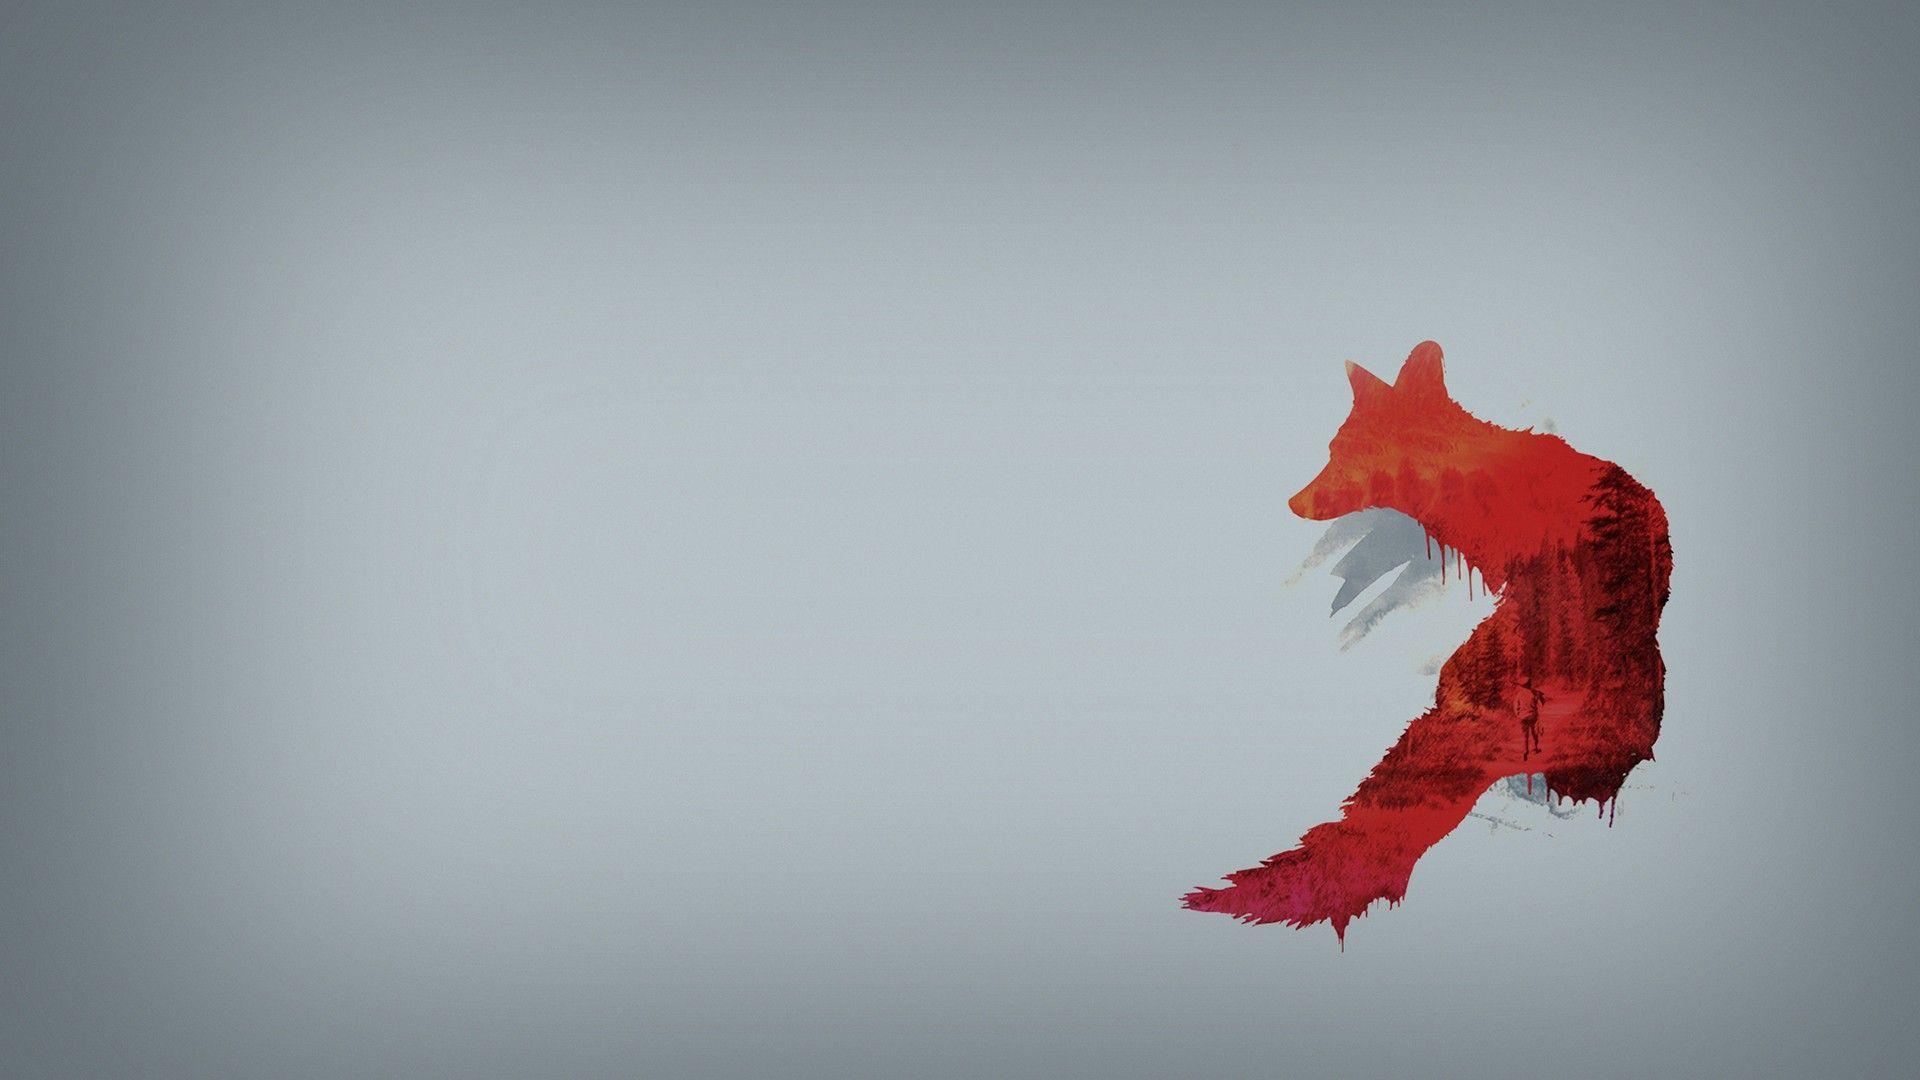 Red Fox 1080p HD Wallpaper. Minimal wallpaper, Minimalist